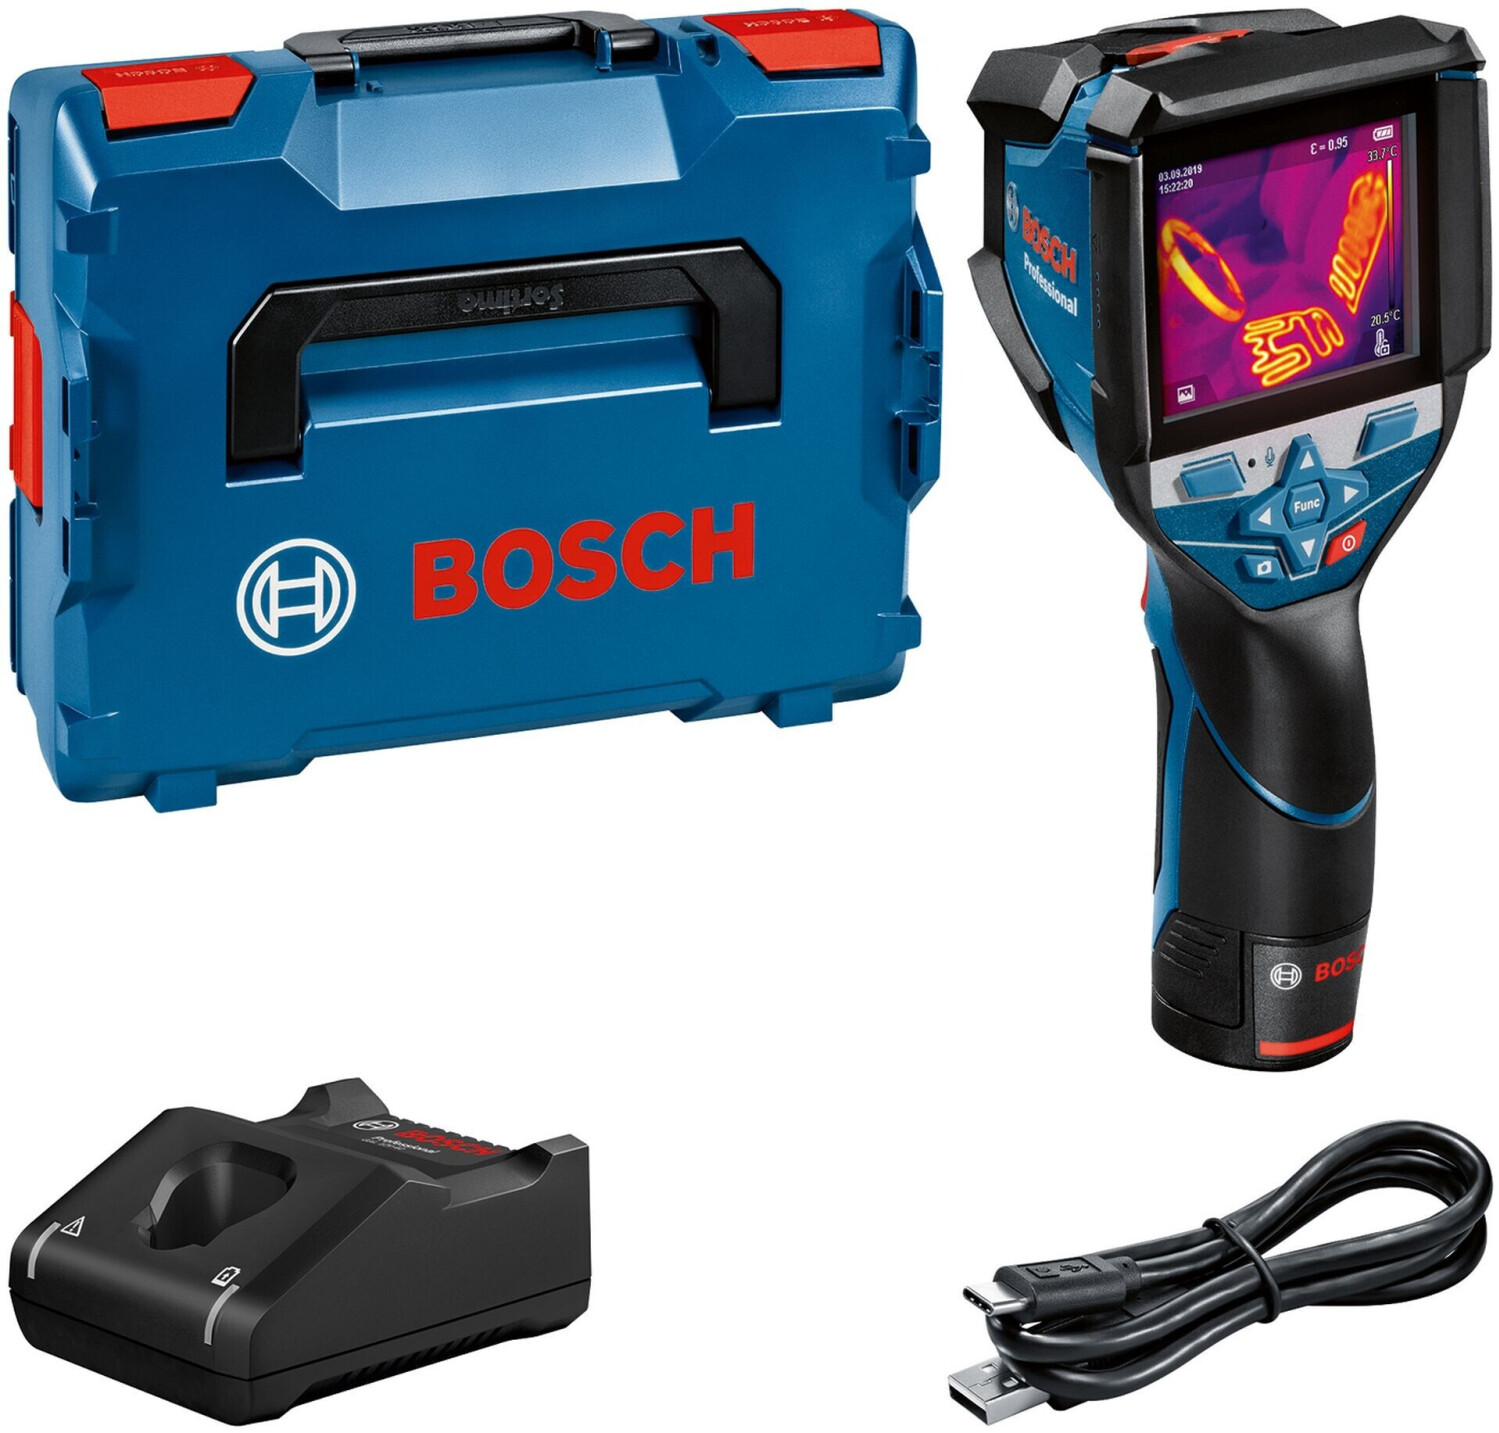 【純正在庫】BOSCH サーモグラフィカメラGTC 600 C 電動工具 未使用 M6478692 環境測定器